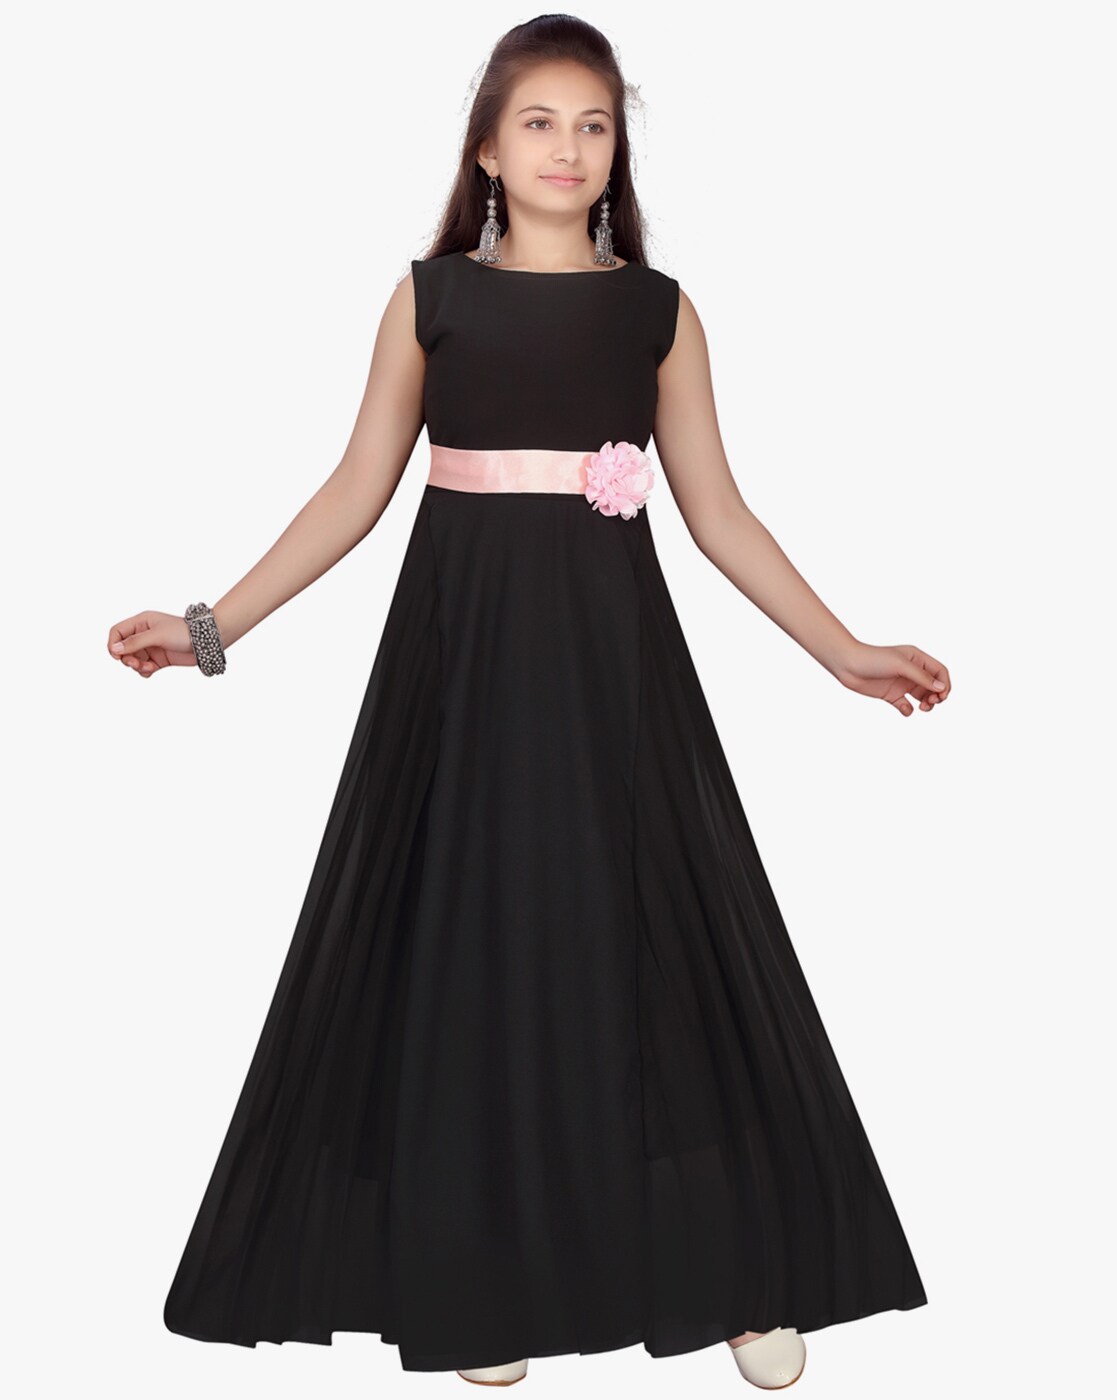 Fancydresswale girls dress new fashion One piece Long frock Maxi Gown –  fancydresswale.com